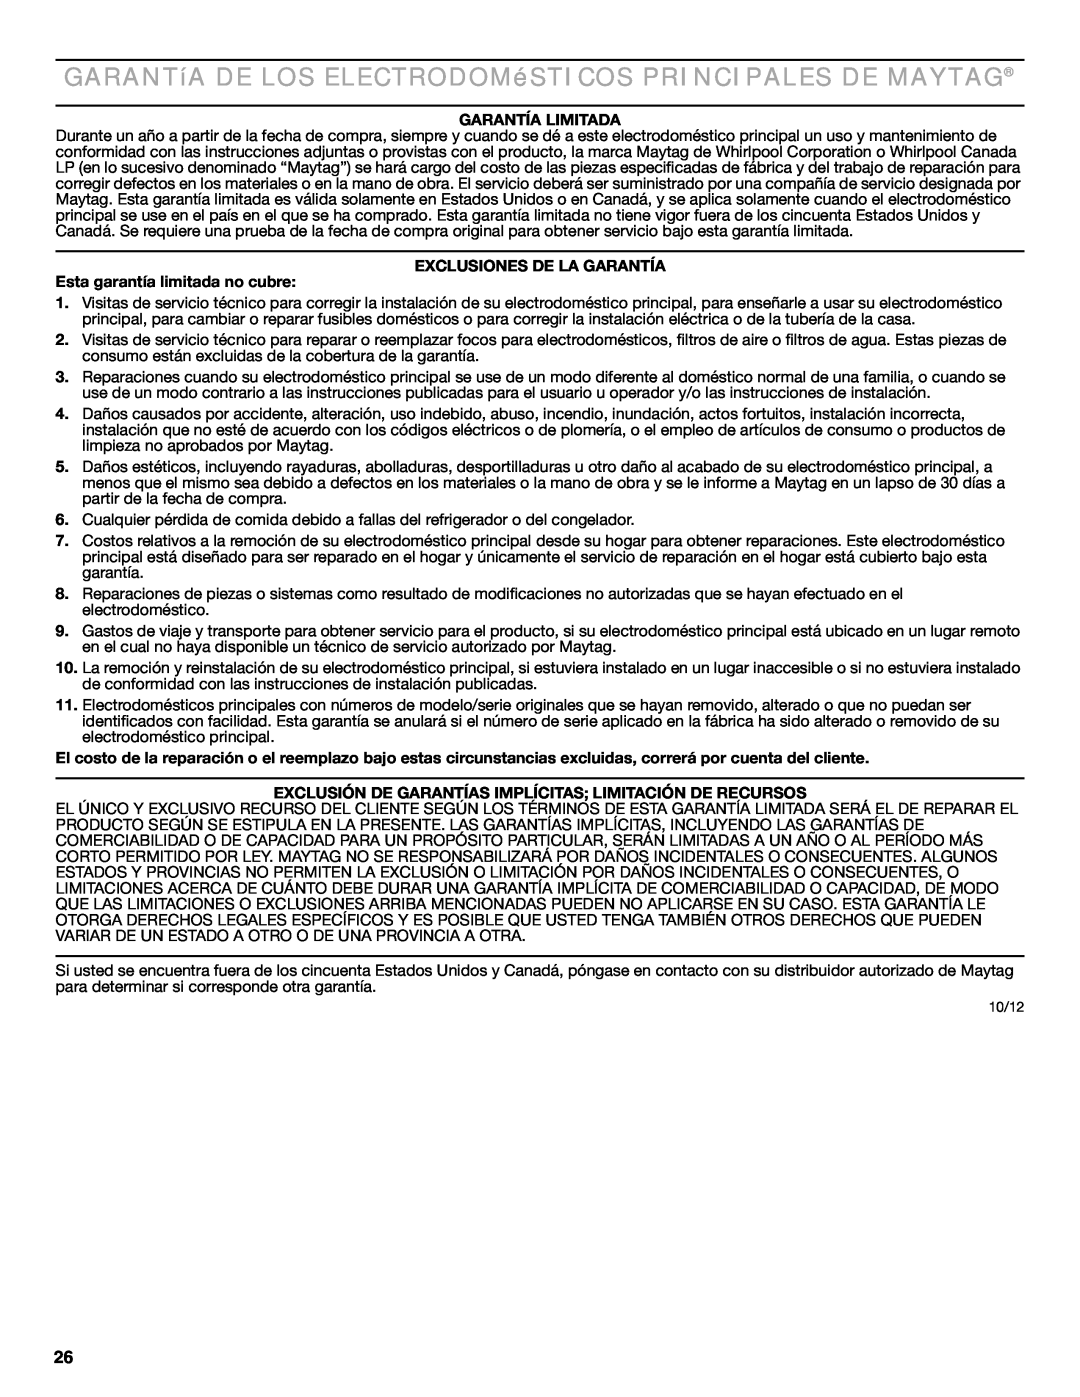 Maytag MDB6600WH warranty GARANTíA DE LOS ELECTRODOMéSTICOS PRINCIPALES DE MAYTAG, Garantía Limitada 